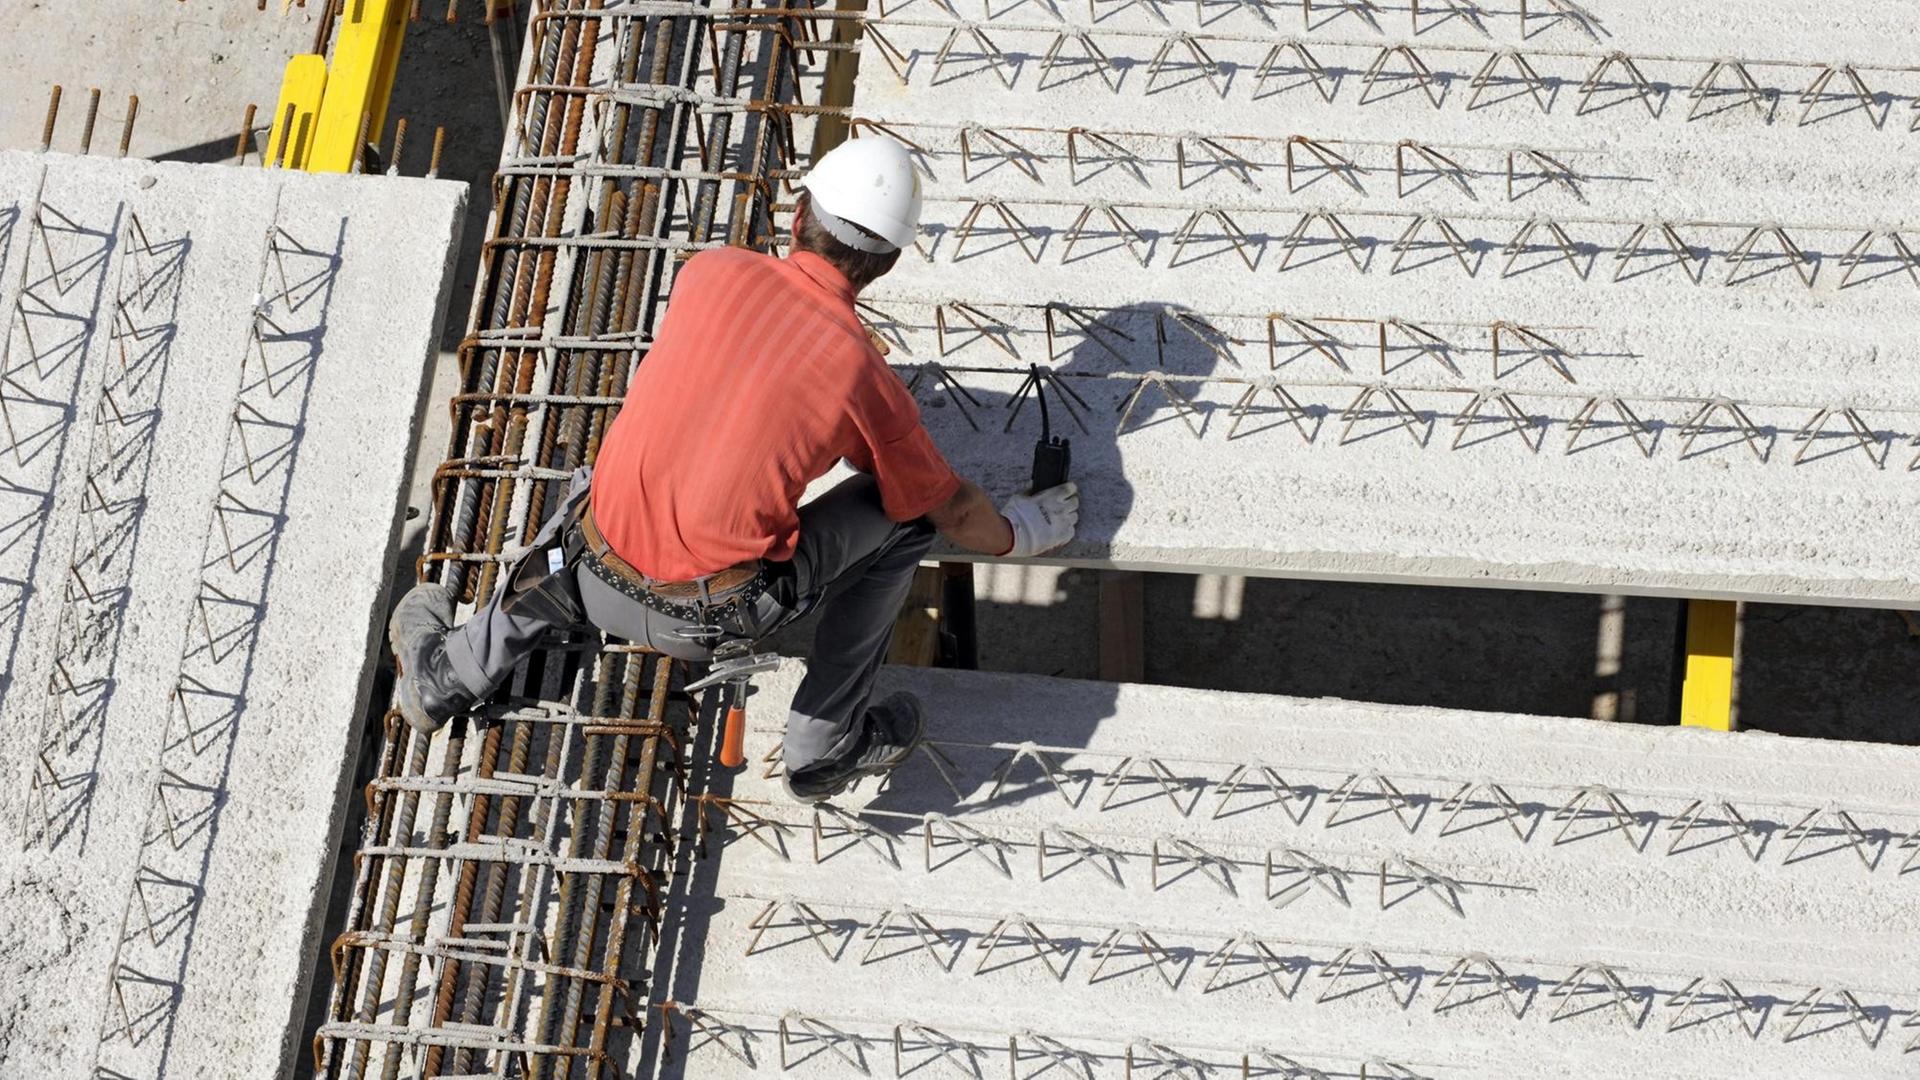 Ein Arbeiter trägt weißen Helm und klettert an einer Baustelle über die Stahlverstrebungen.